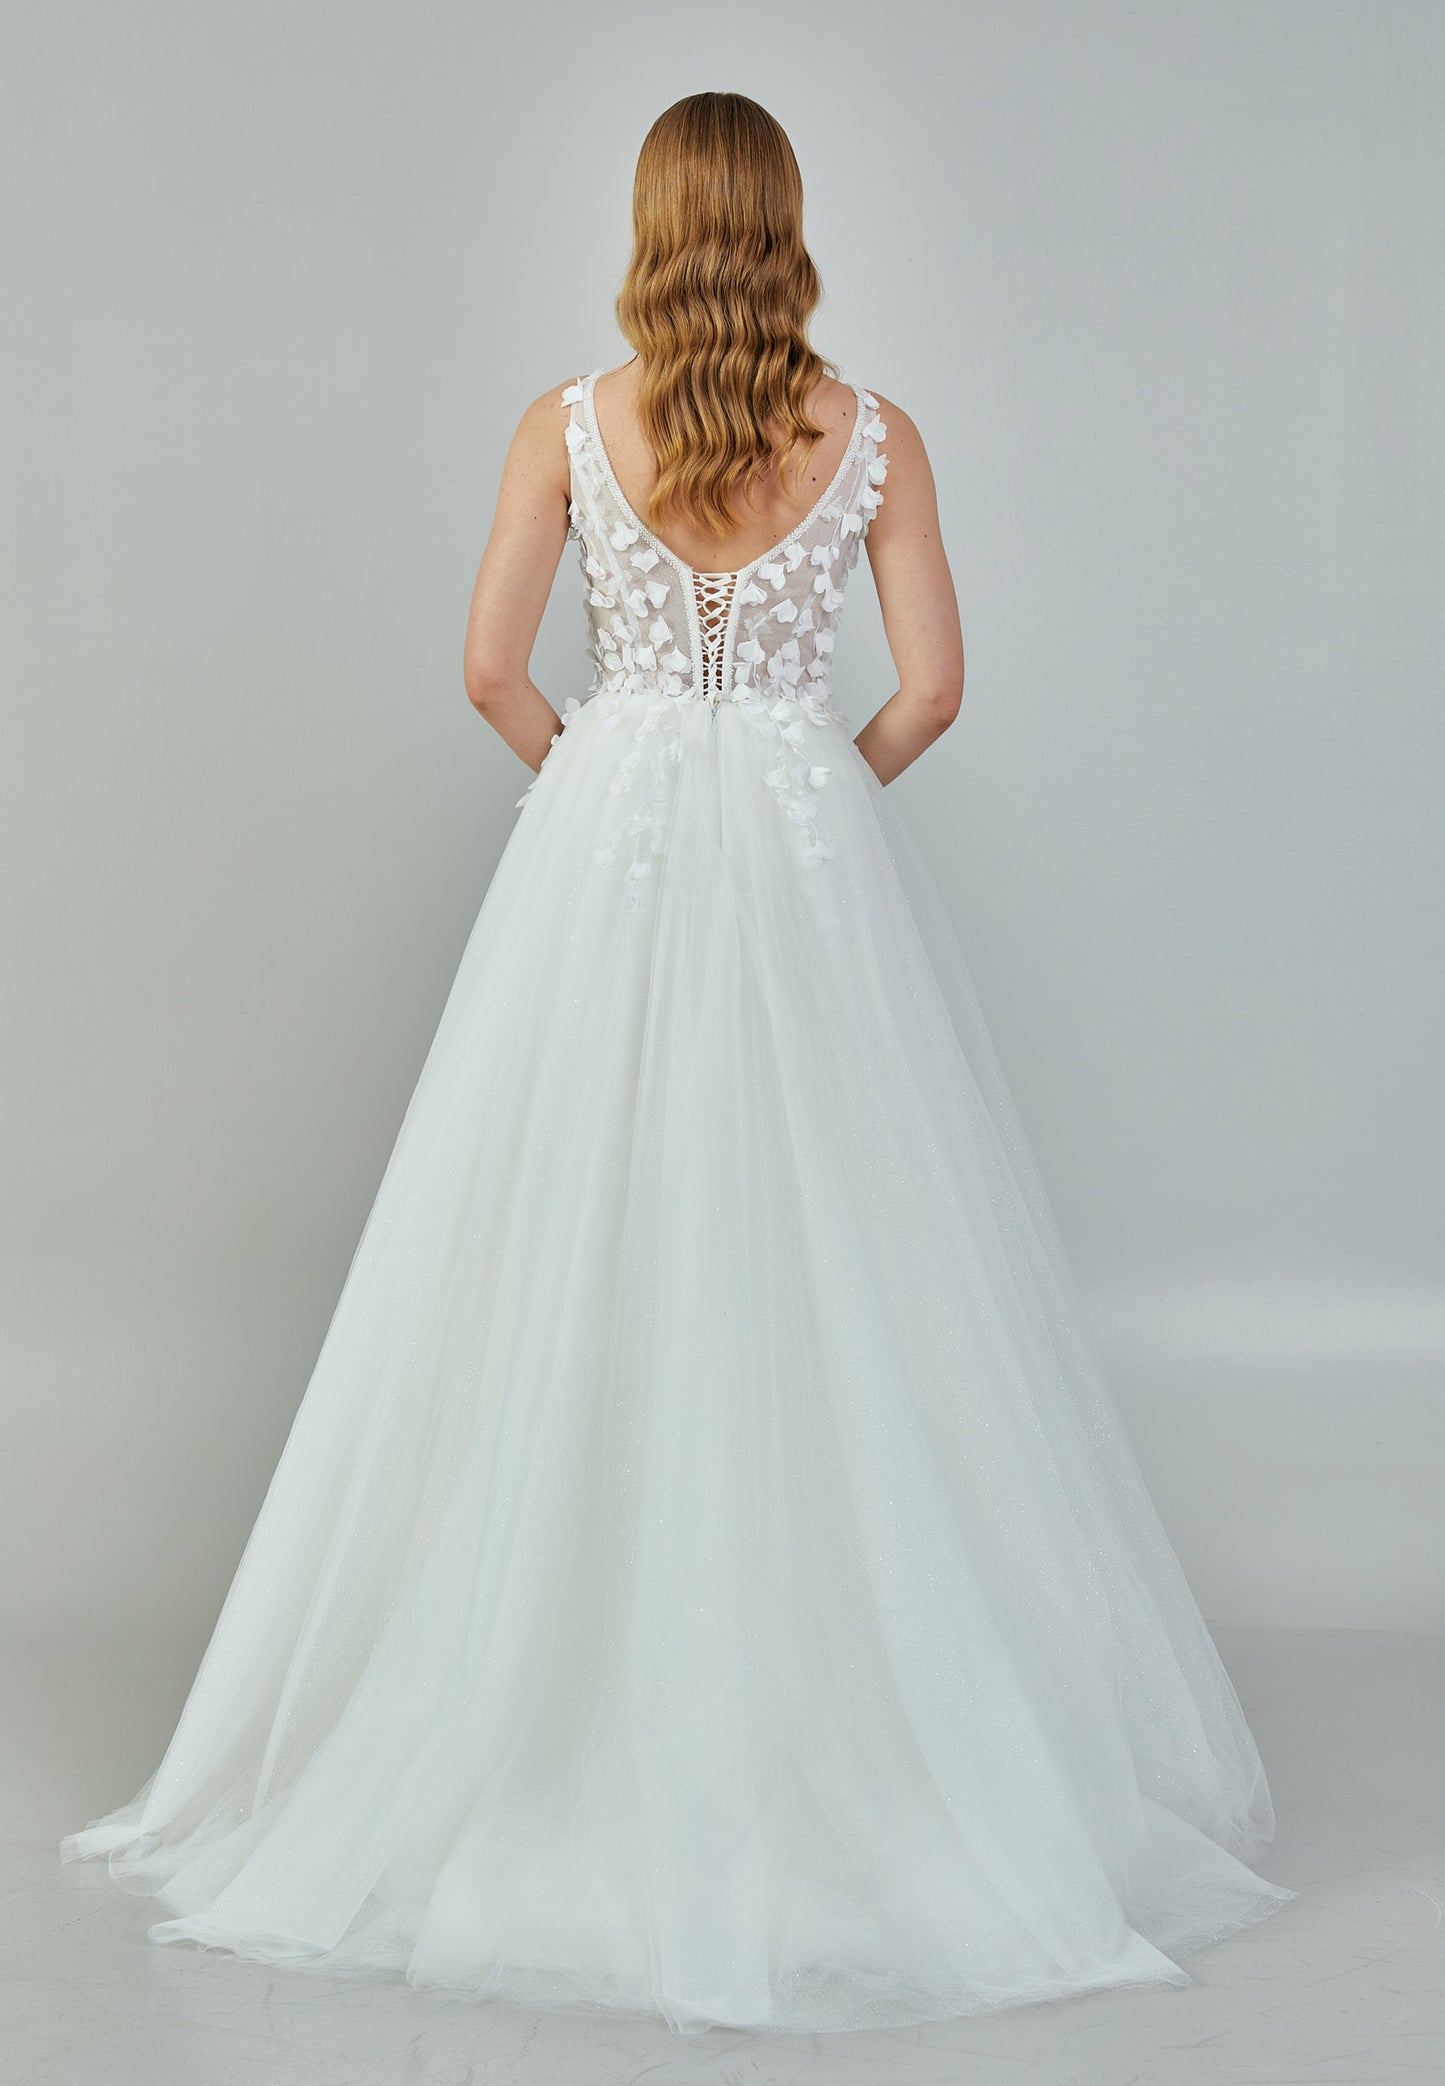 Buy wedding dresses online